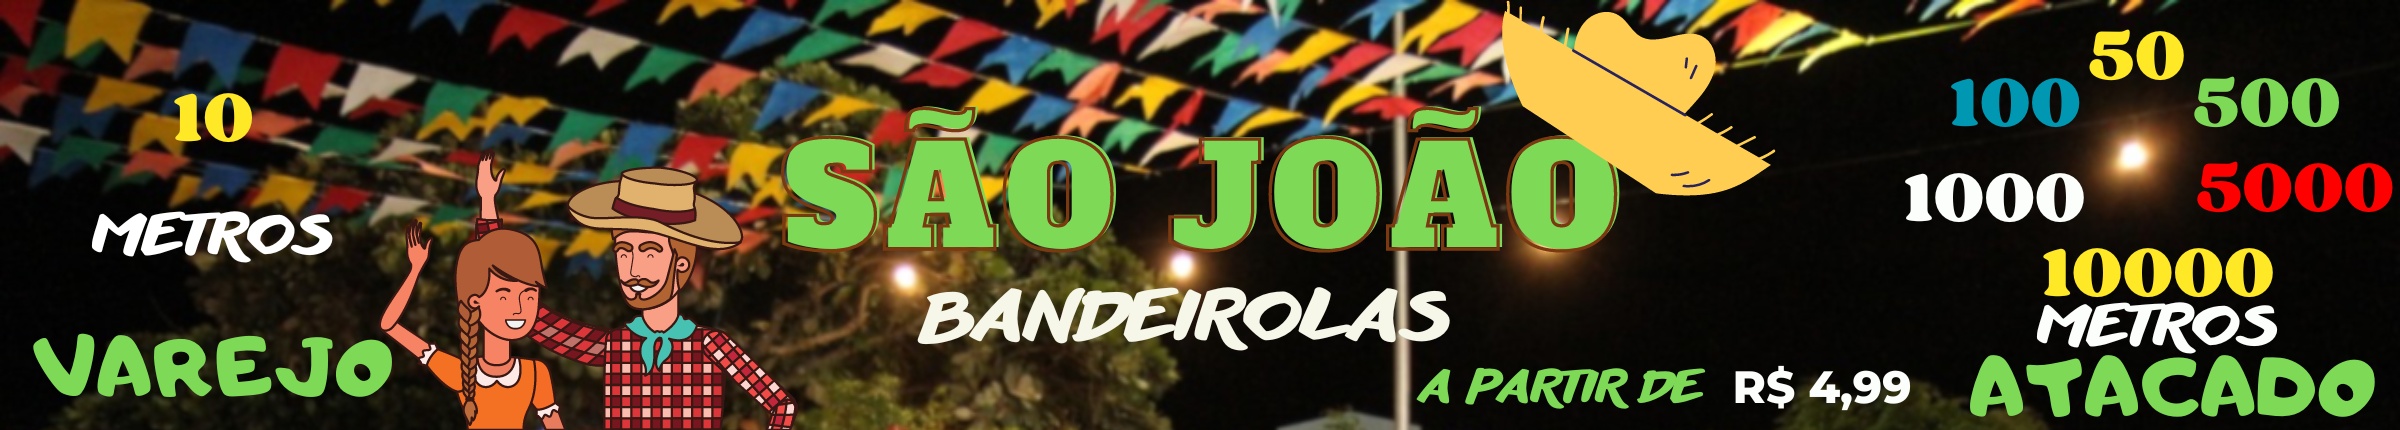 SÃO JOÃO BANDEIROLAS